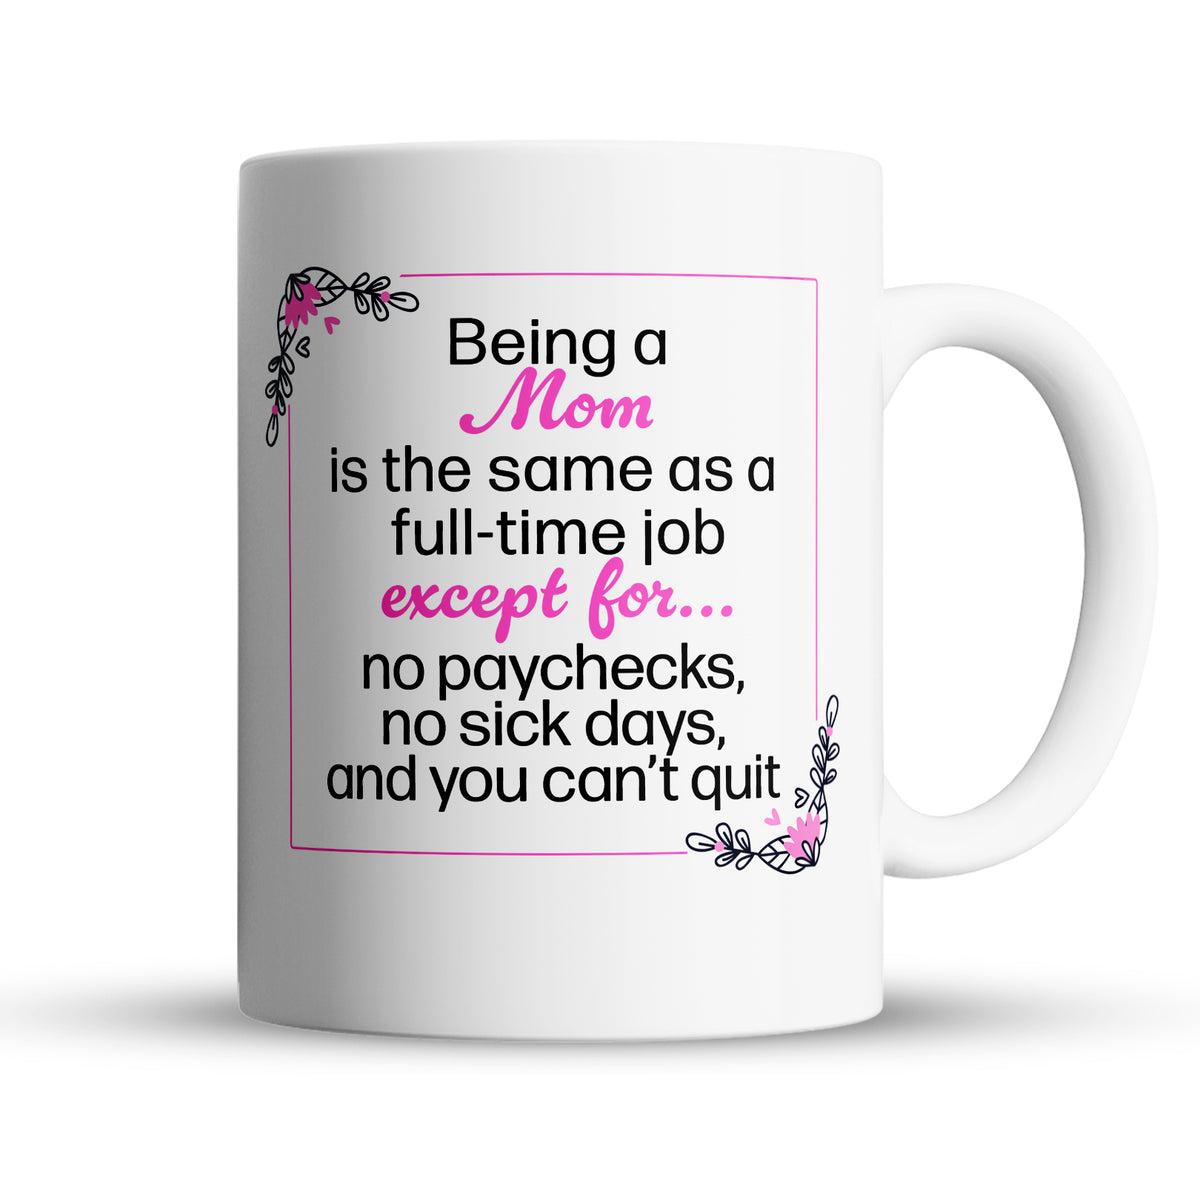 “No Paychecks, No Sick Days” Large 15oz Mug - Funny Gift for Mom